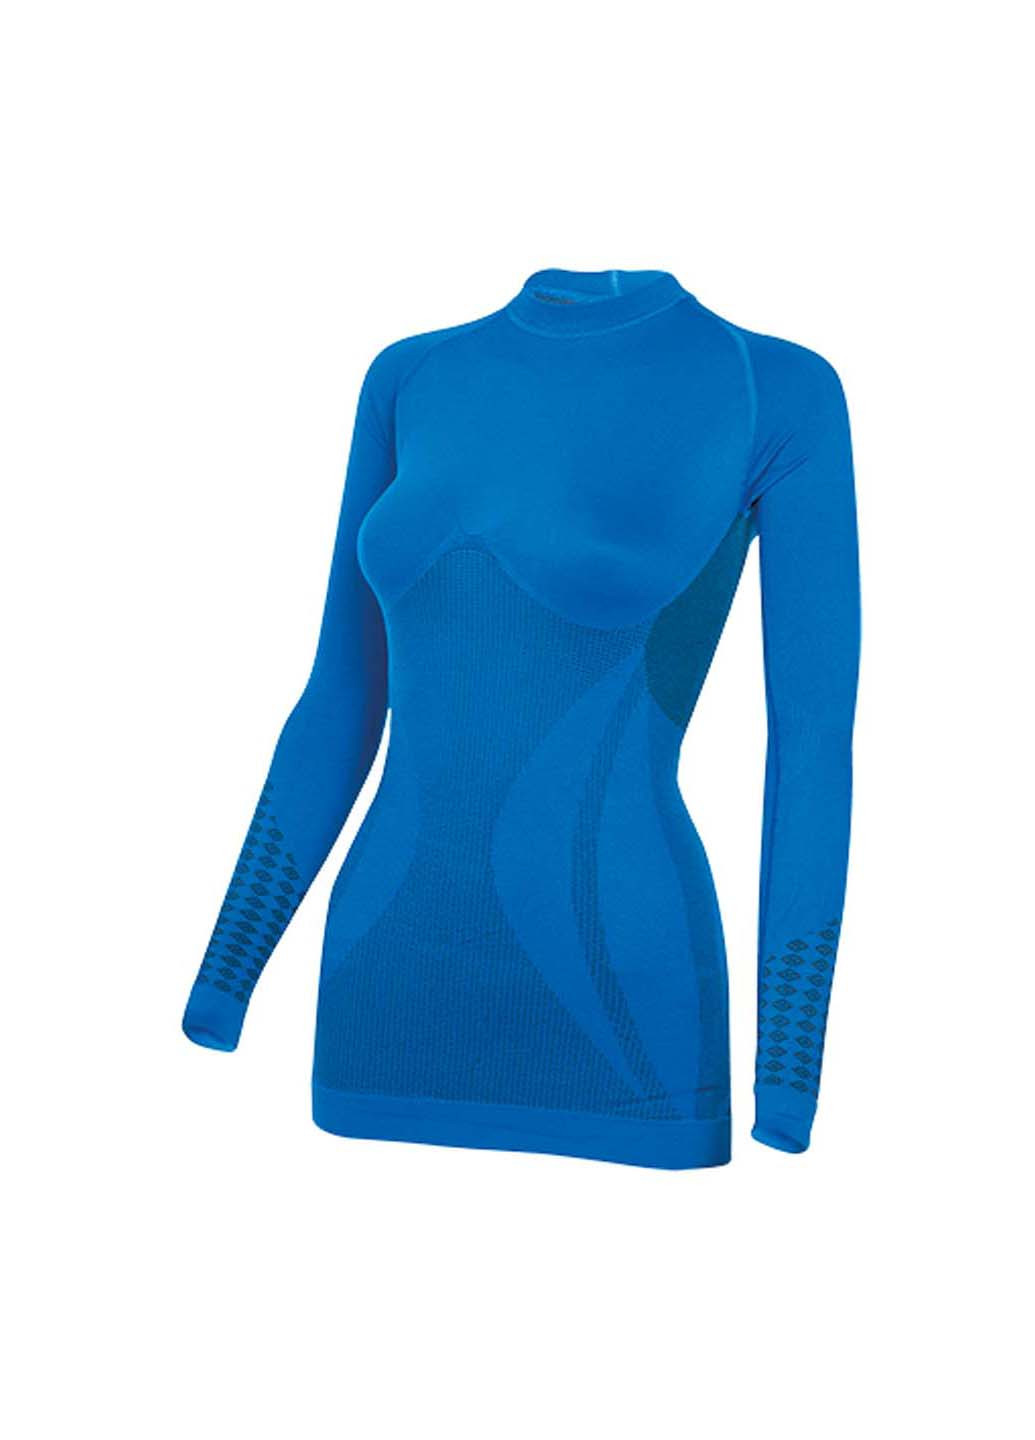 Комплект термобелья Hanna Style свитер + брюки геометрический синий спортивный полипропилен, полиамид